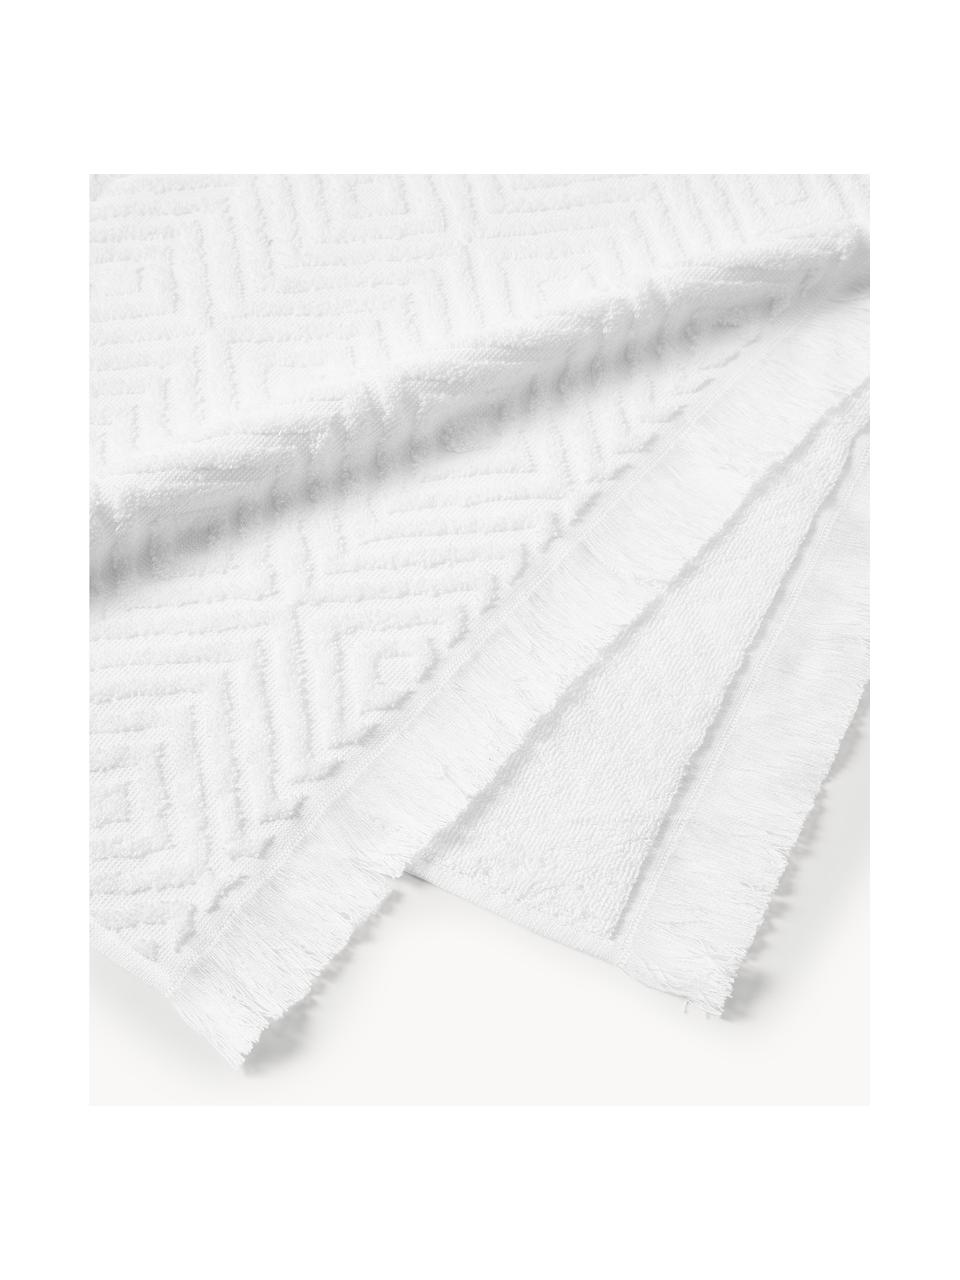 Komplet ręczników Jacqui, różne rozmiary, Biały, 4 elem. (ręcznik do rąk, ręcznik kąpielowy)